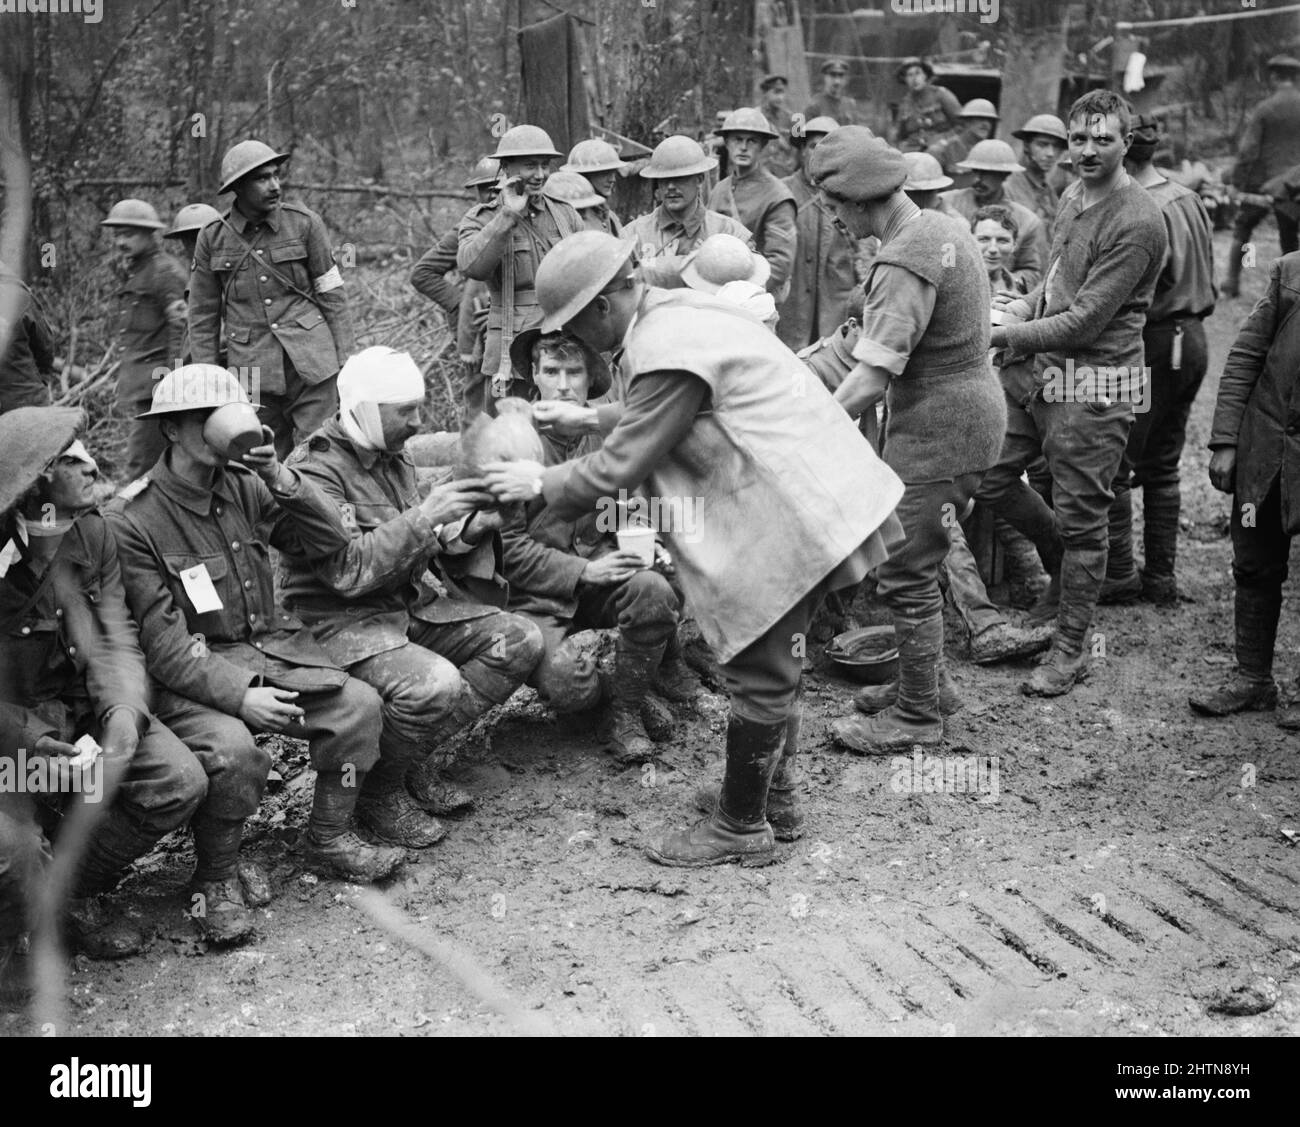 Bataille de l'Ancre 13 - 18 novembre 1916 : soldats britanniques blessés dans un dressing à Aveluy Wood. Un homme montre des dommages à son casque d'acier d'où il a subi une blessure à la tête. 13 novembre 1916 pendant la bataille de la somme Banque D'Images